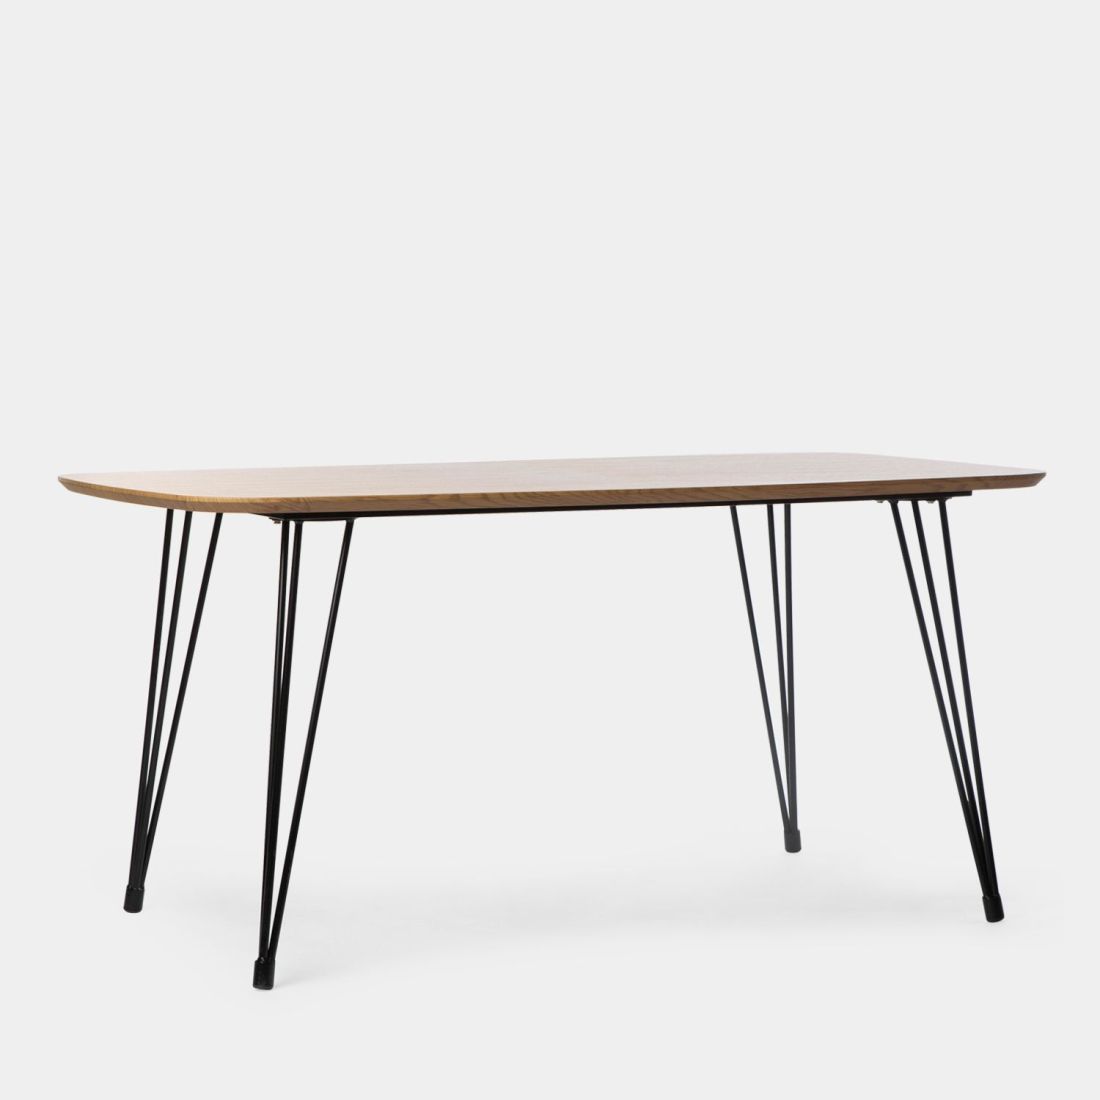 La mesa de comedor rectangular Nils de estilo contemporáneo es una de nuestras favoritas. Su diseño exclusivo y diferenciador con tablero en acabado natural